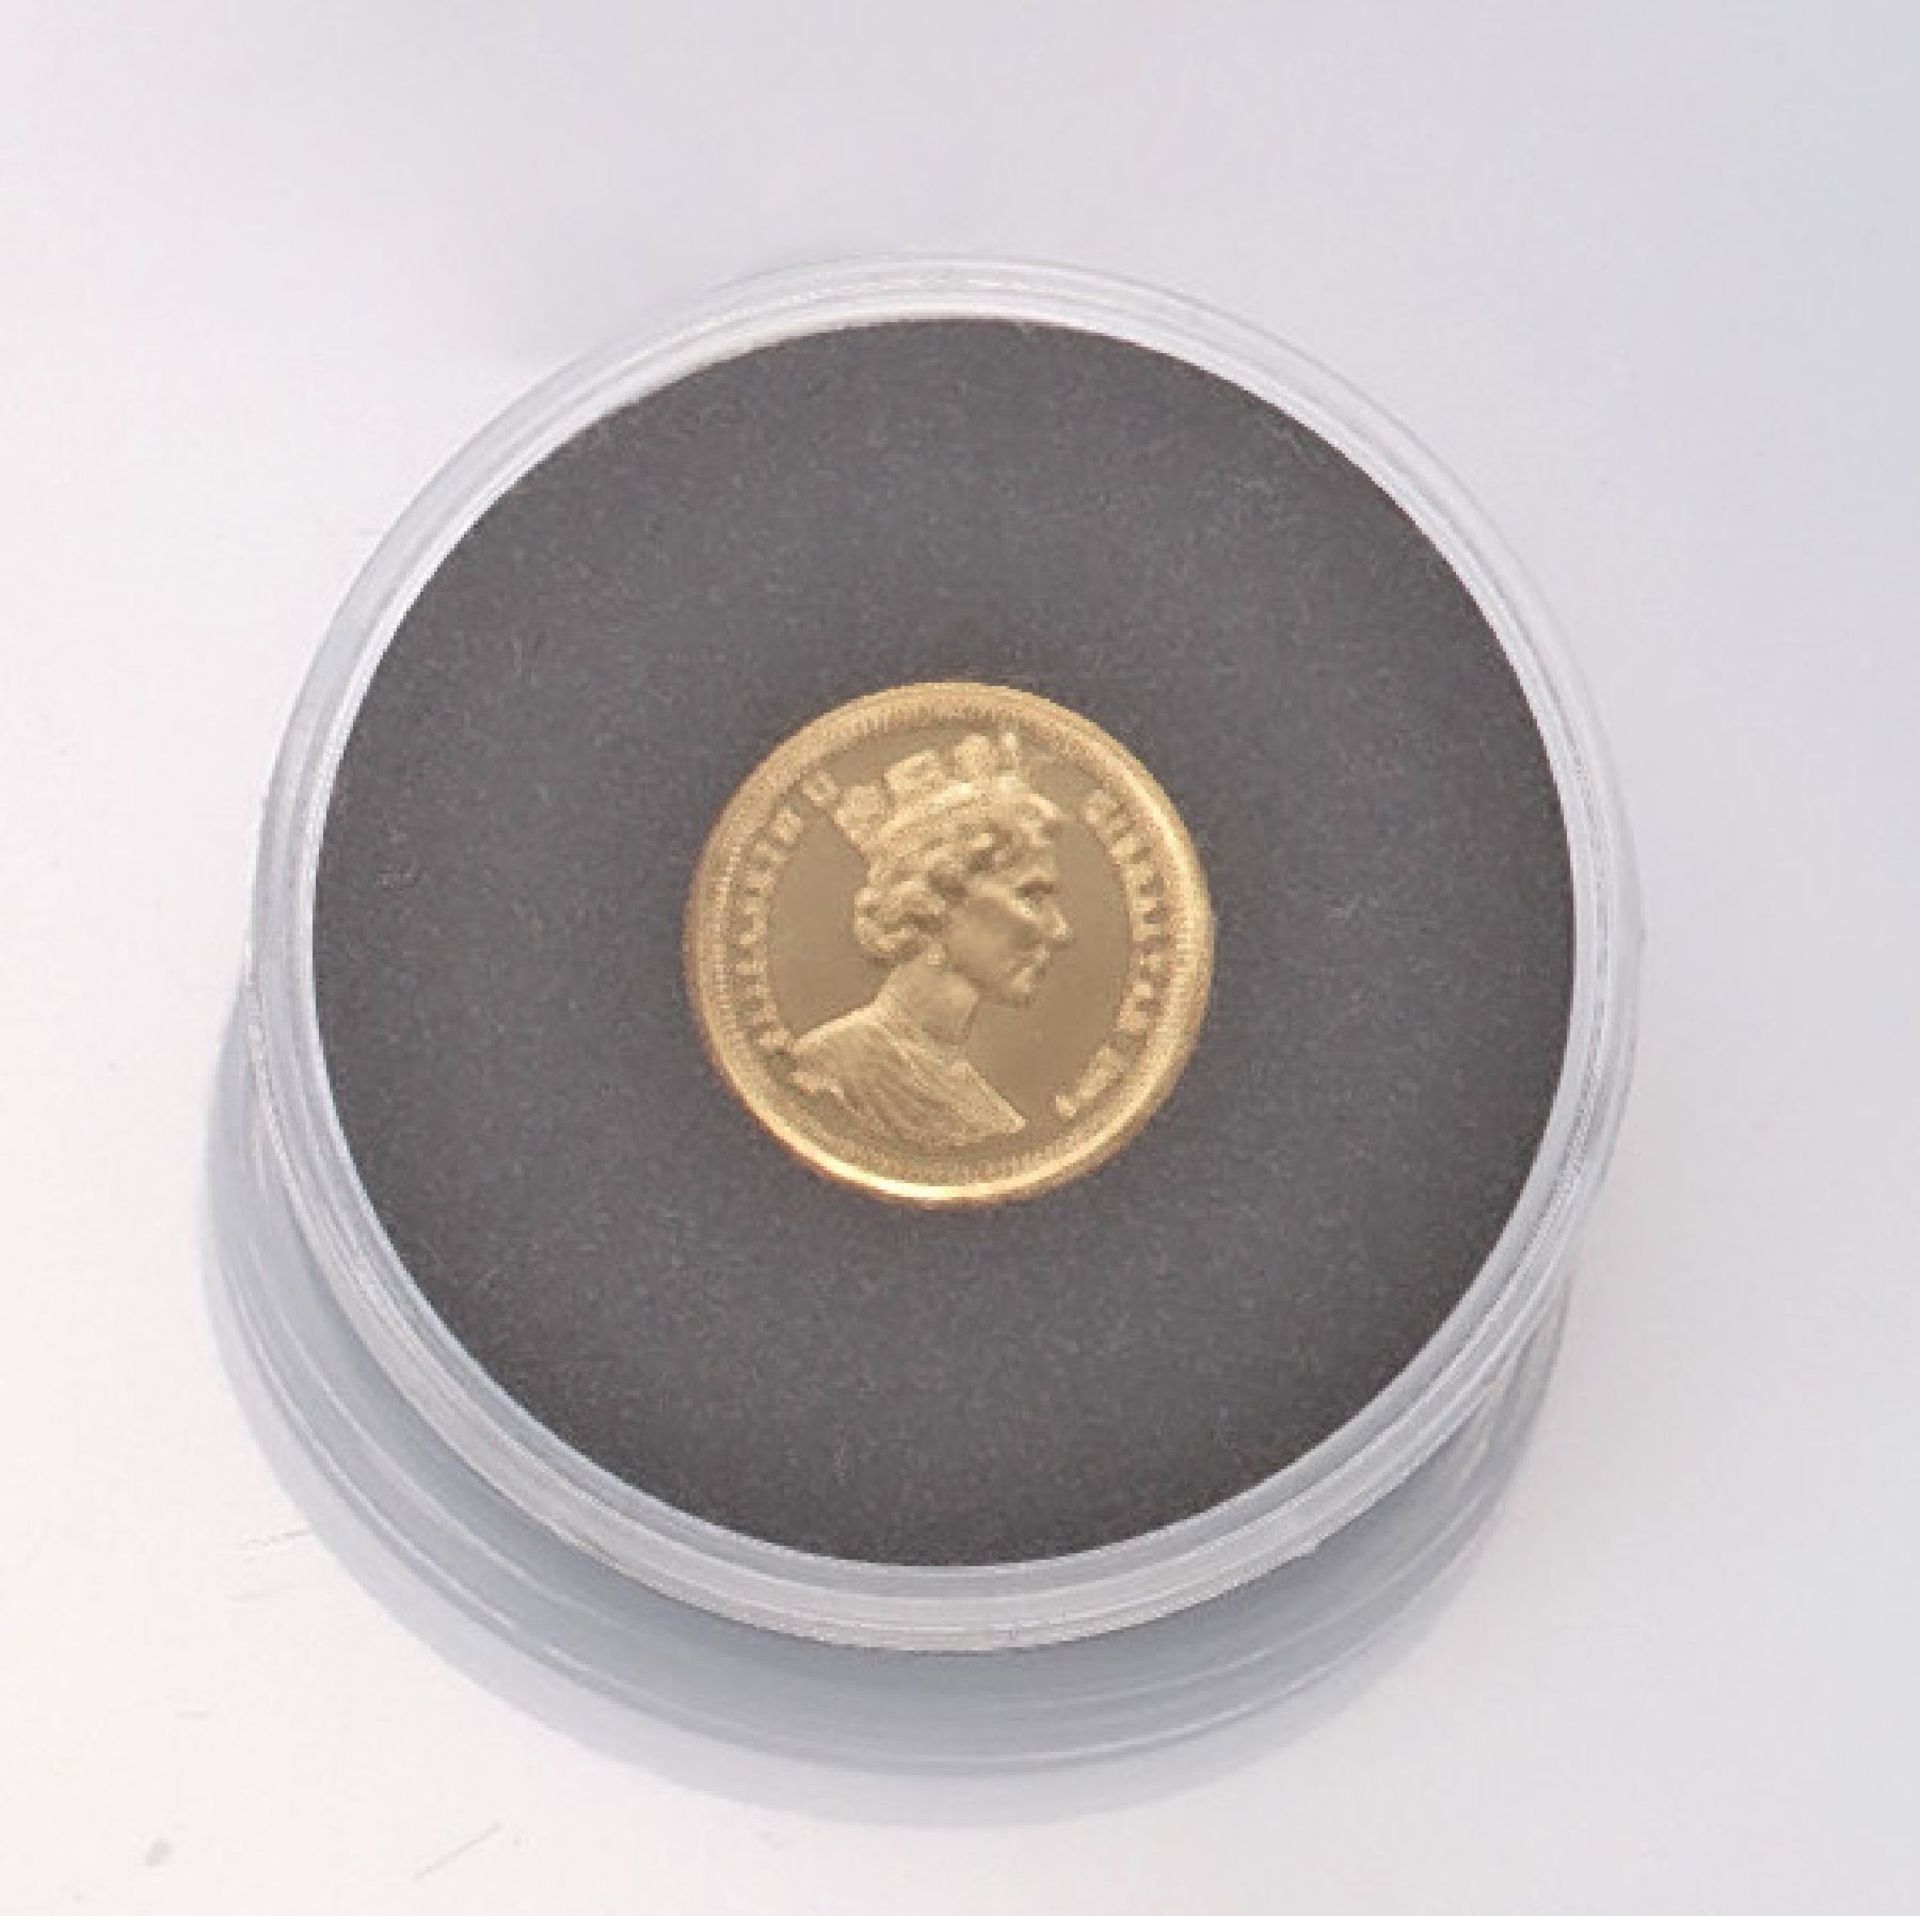 Goldmünze, 15 ECU, Gibraltar, 1995, Heinrich der Löwe, 1/25 Unze Gold, 999/1000, aus der Serie die